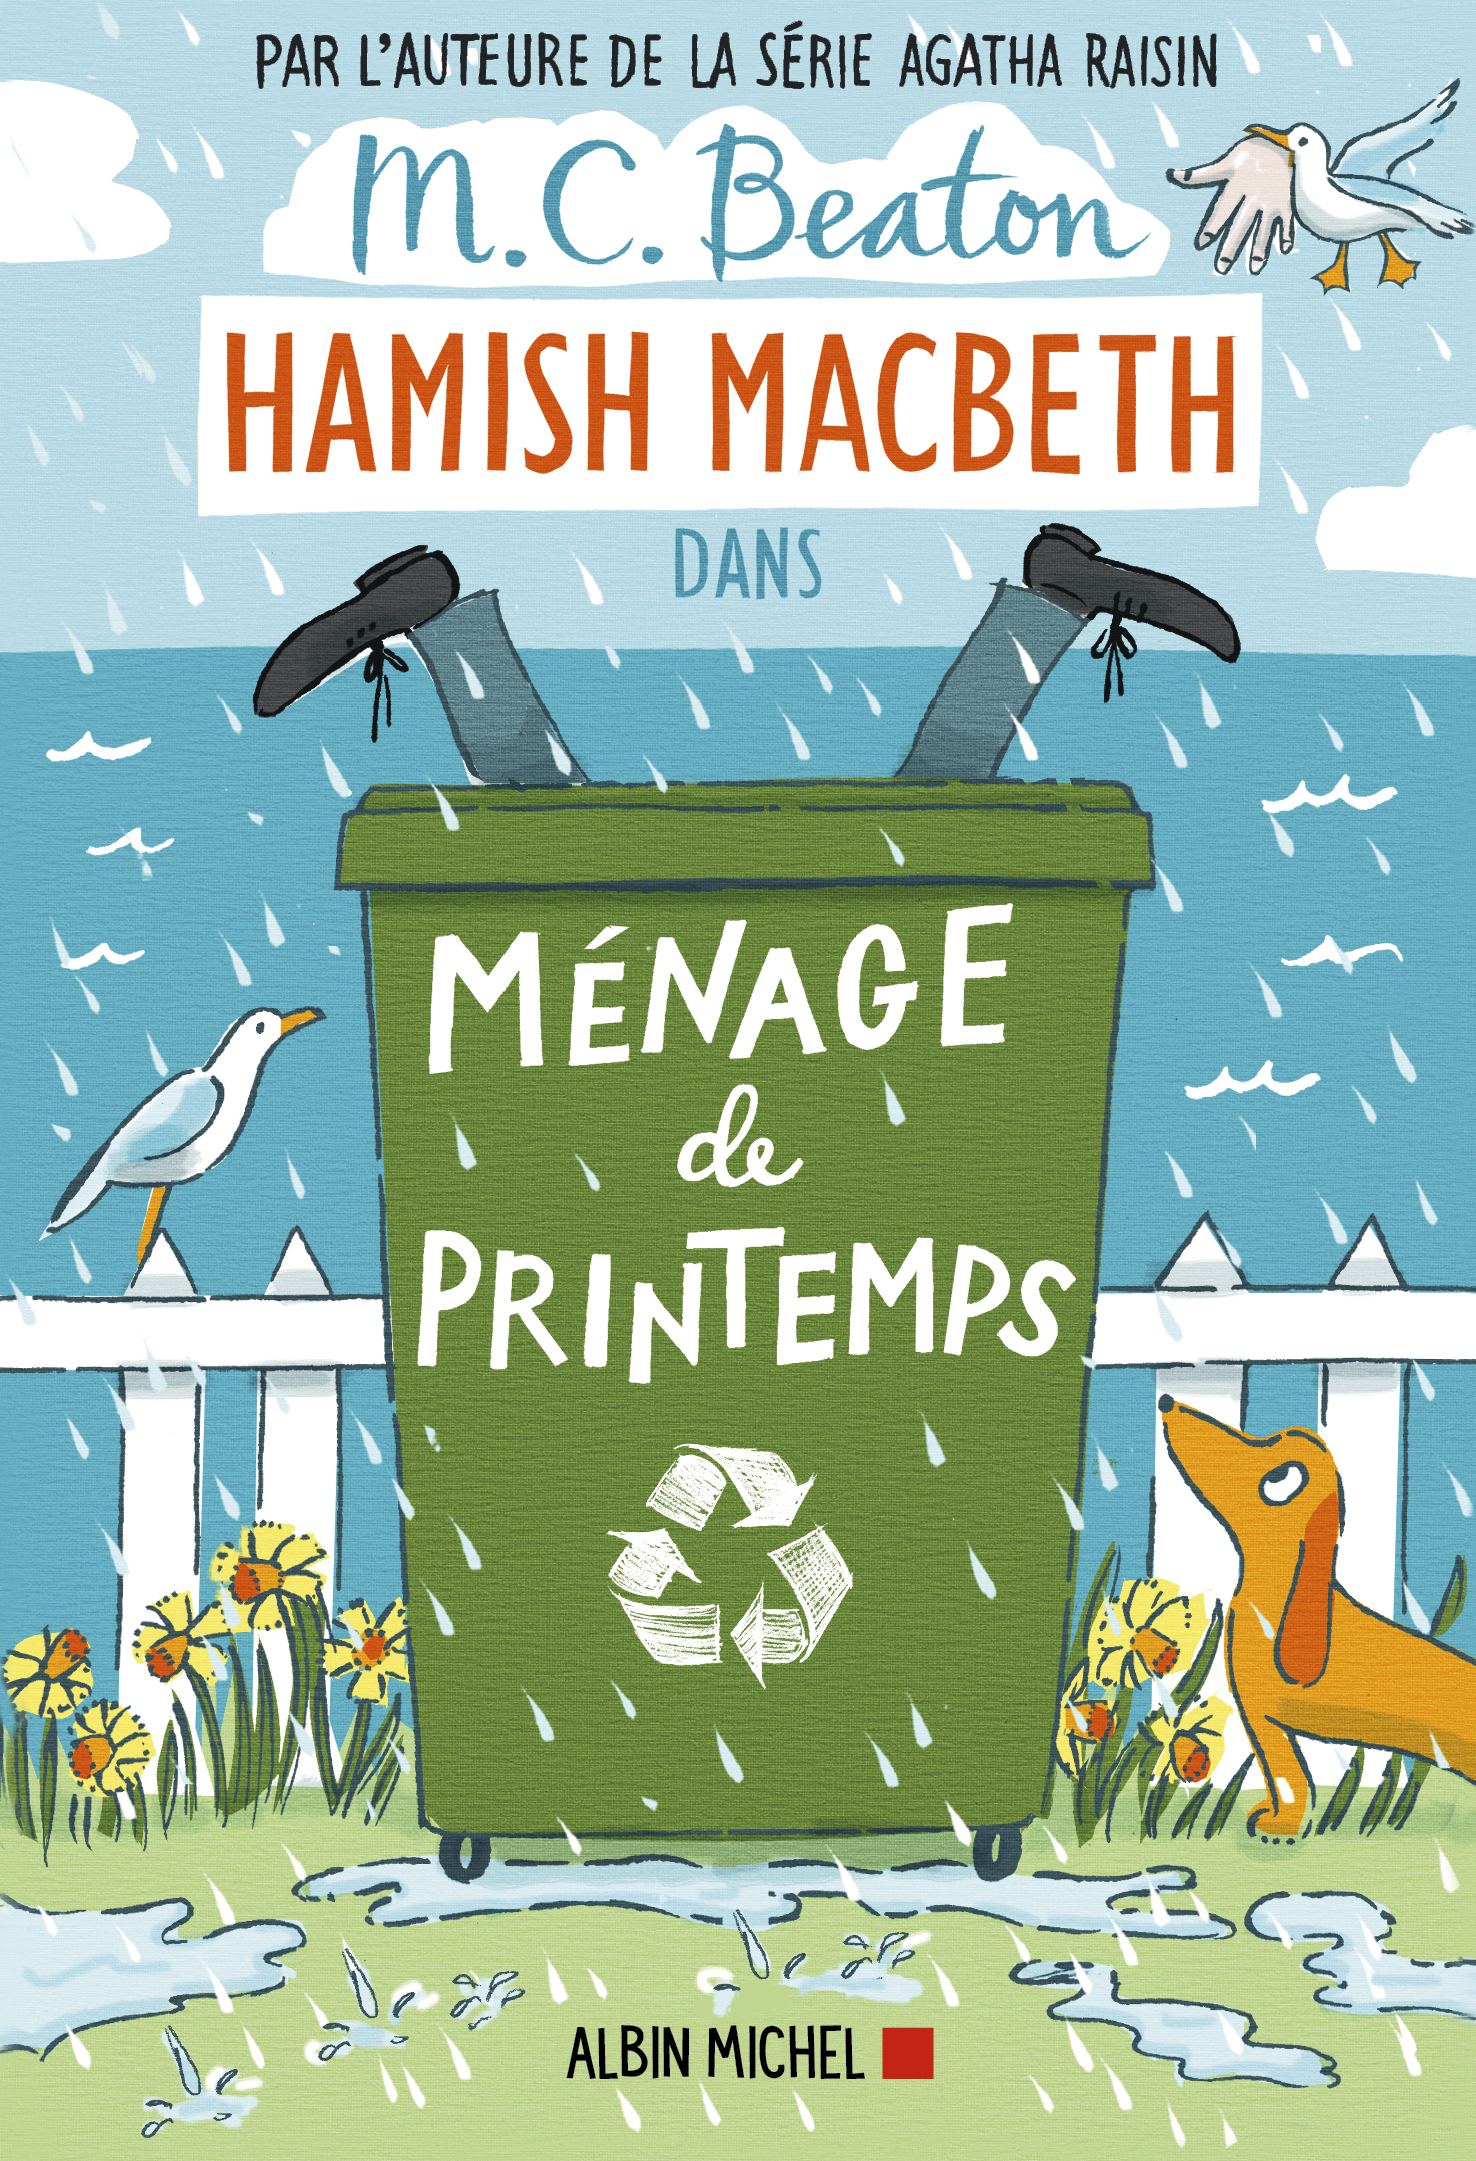 Couverture du livre Hamish Macbeth 16 - Ménage de printemps